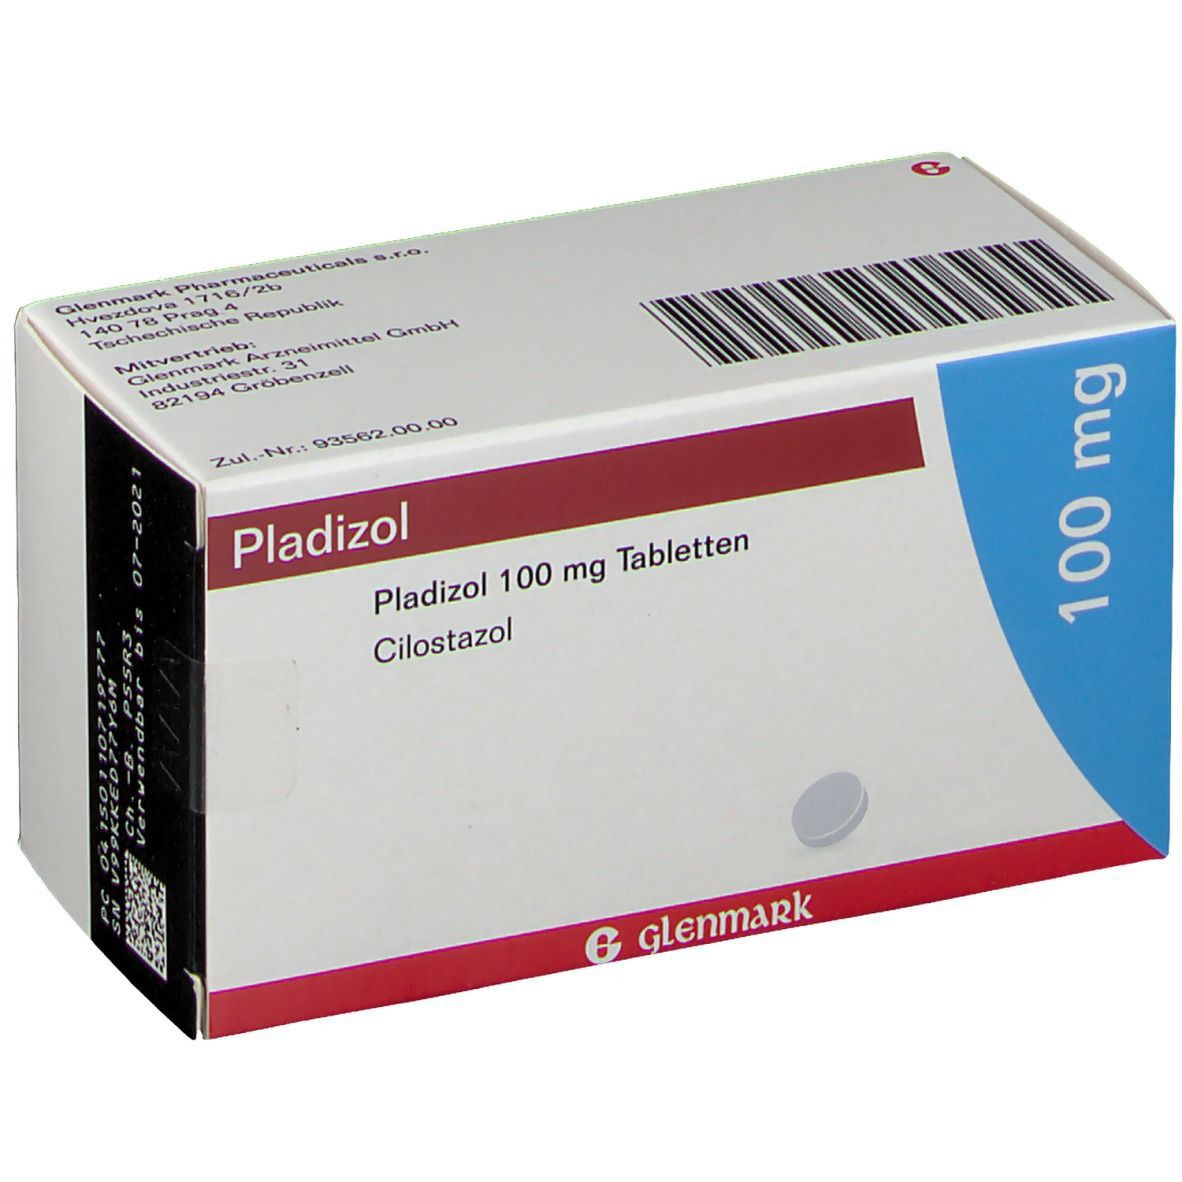 Pladizol 100 mg